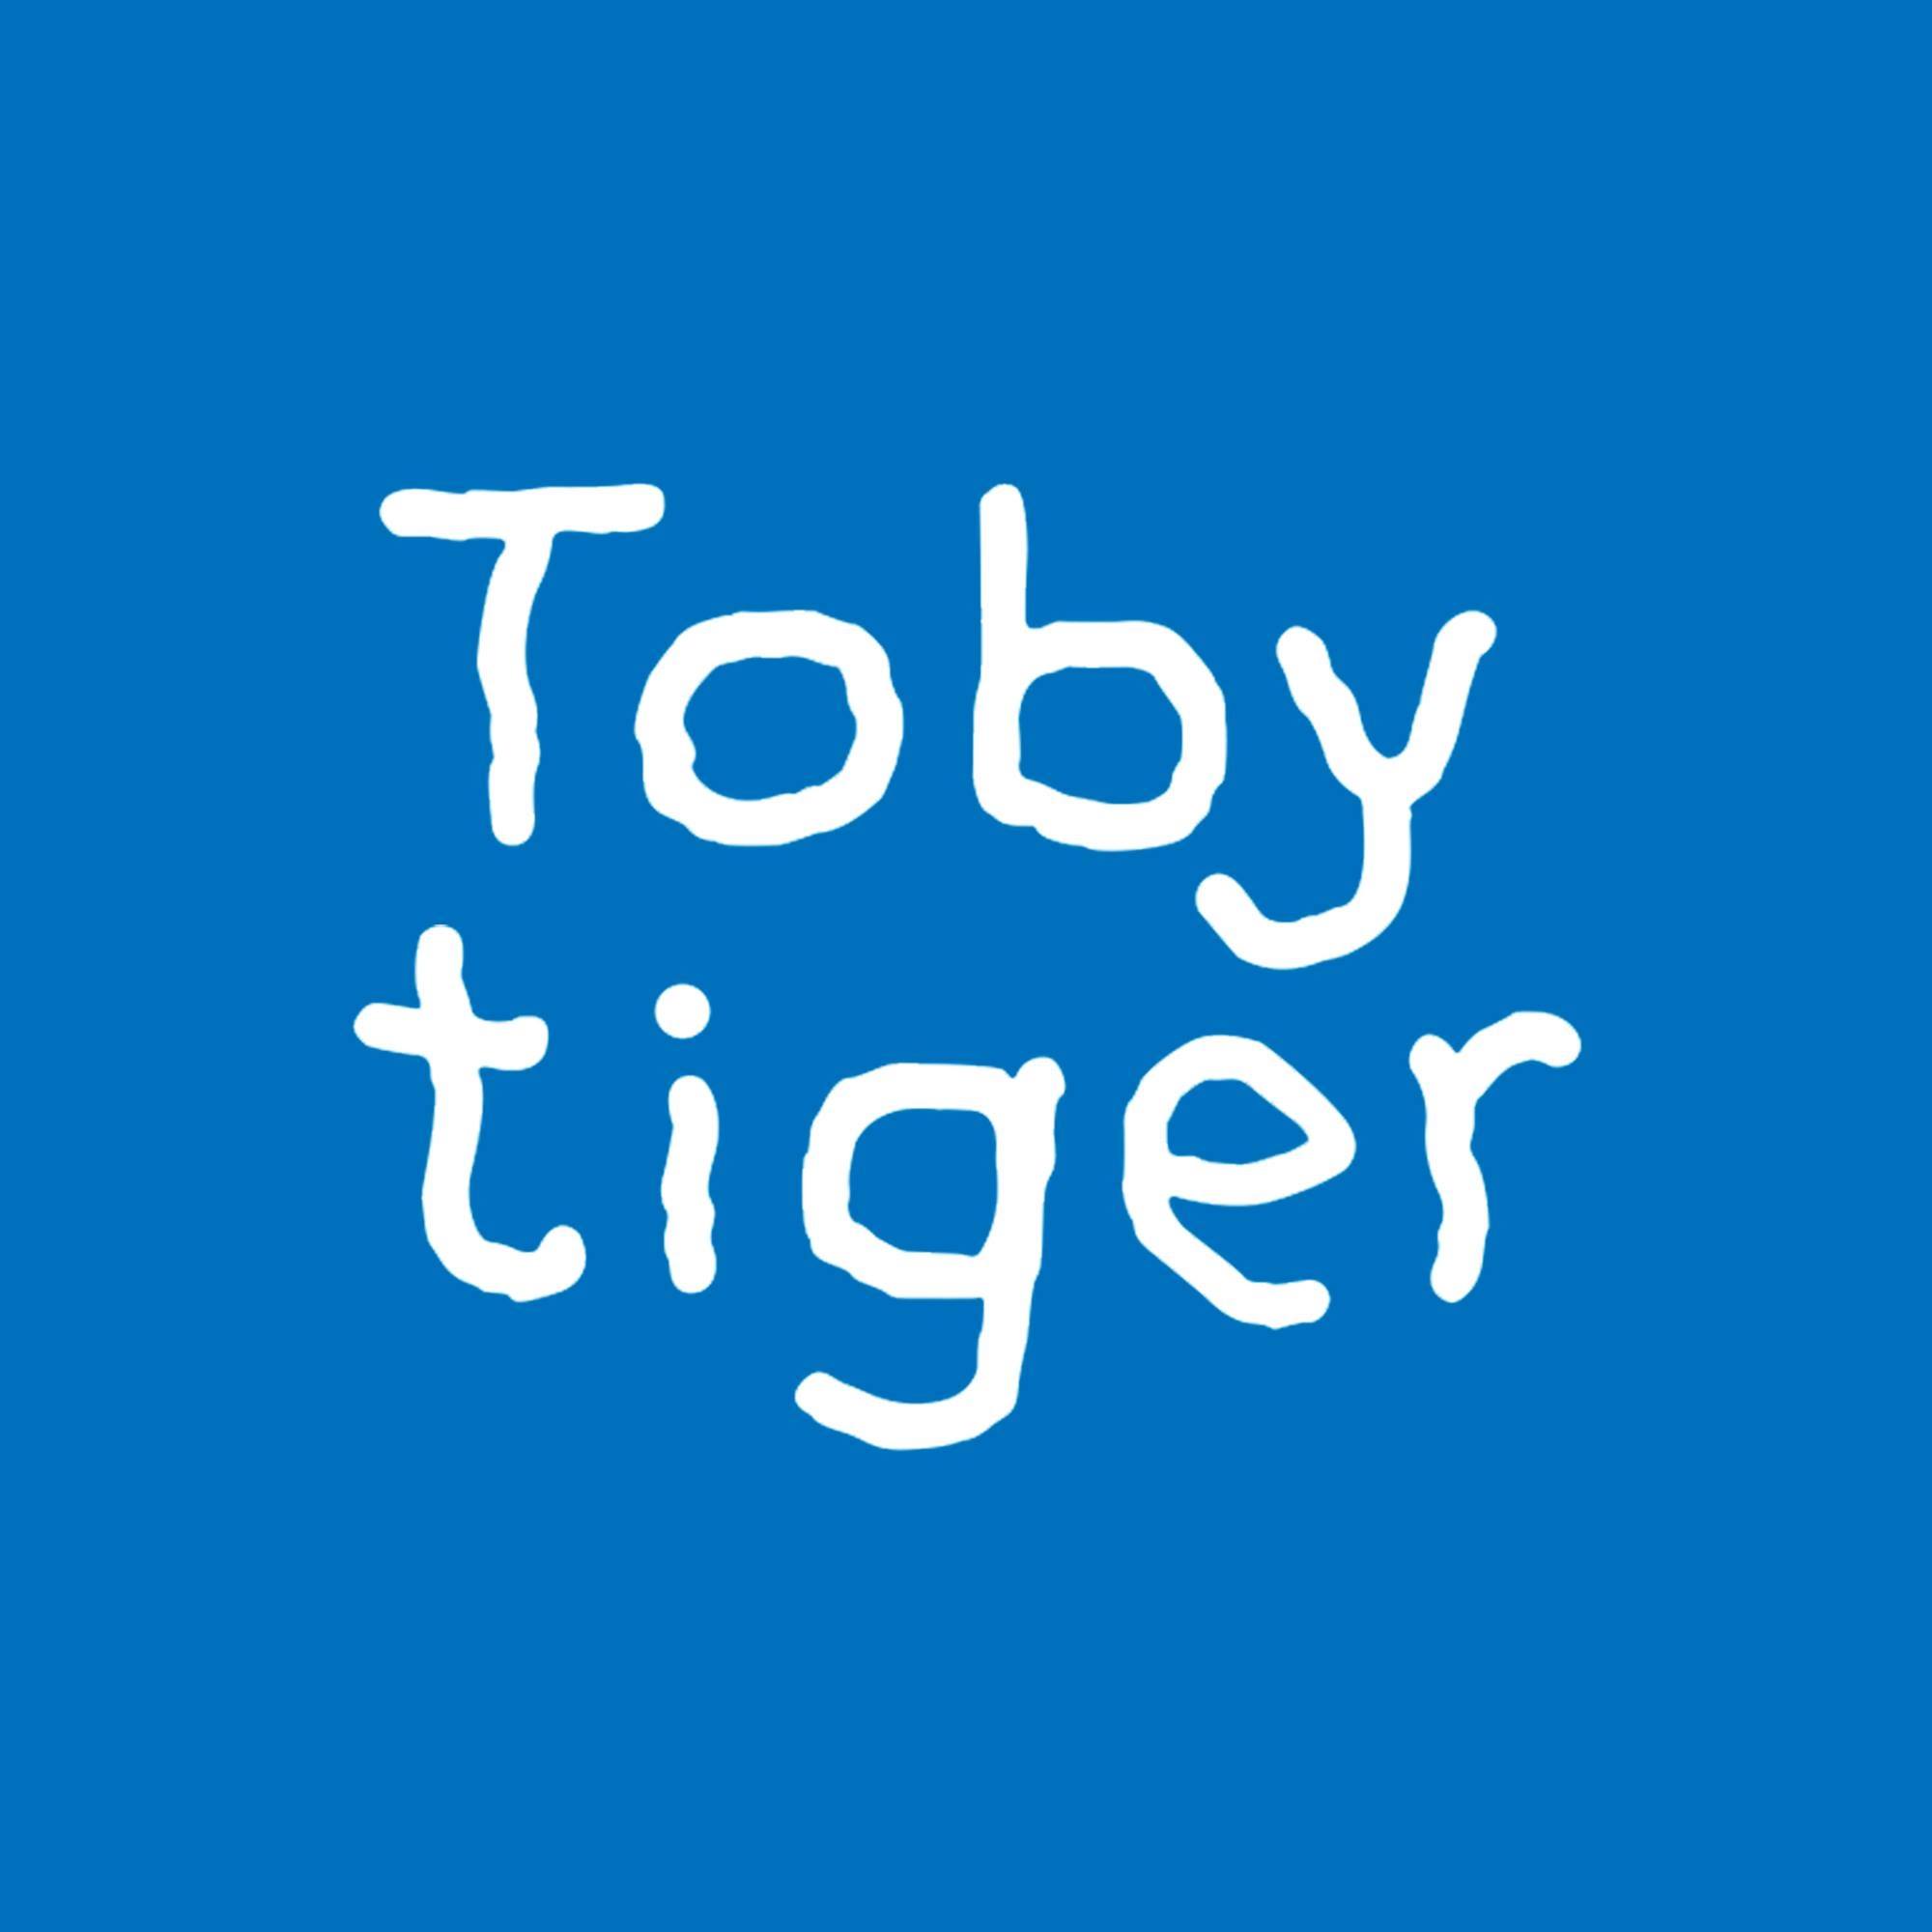 Toby Tiger's logo